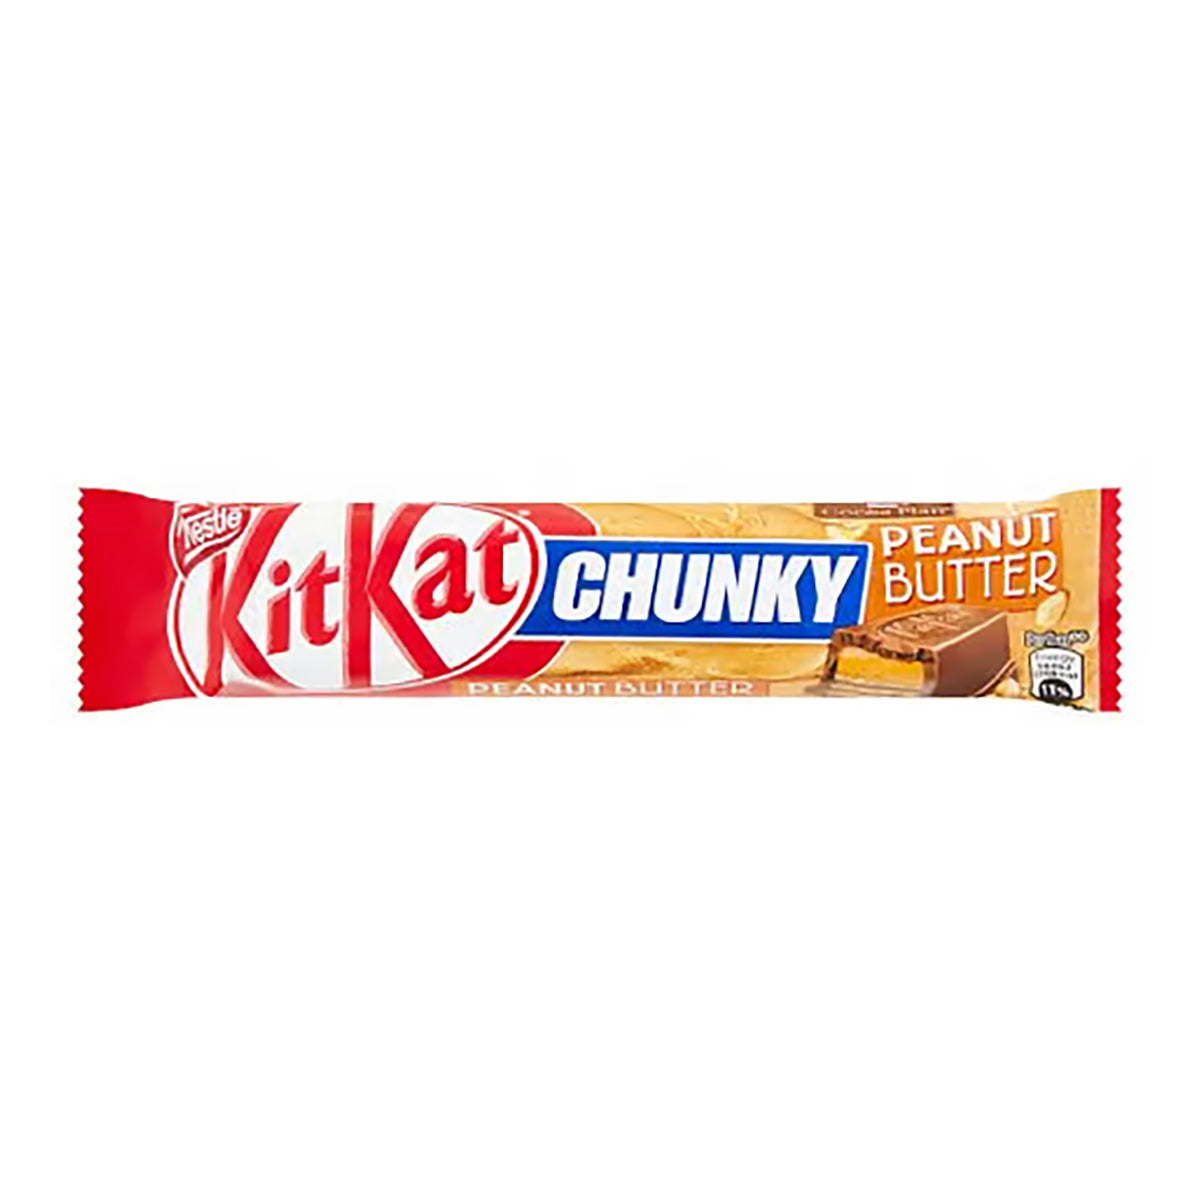 kit kat chunky peanut butter - 100g